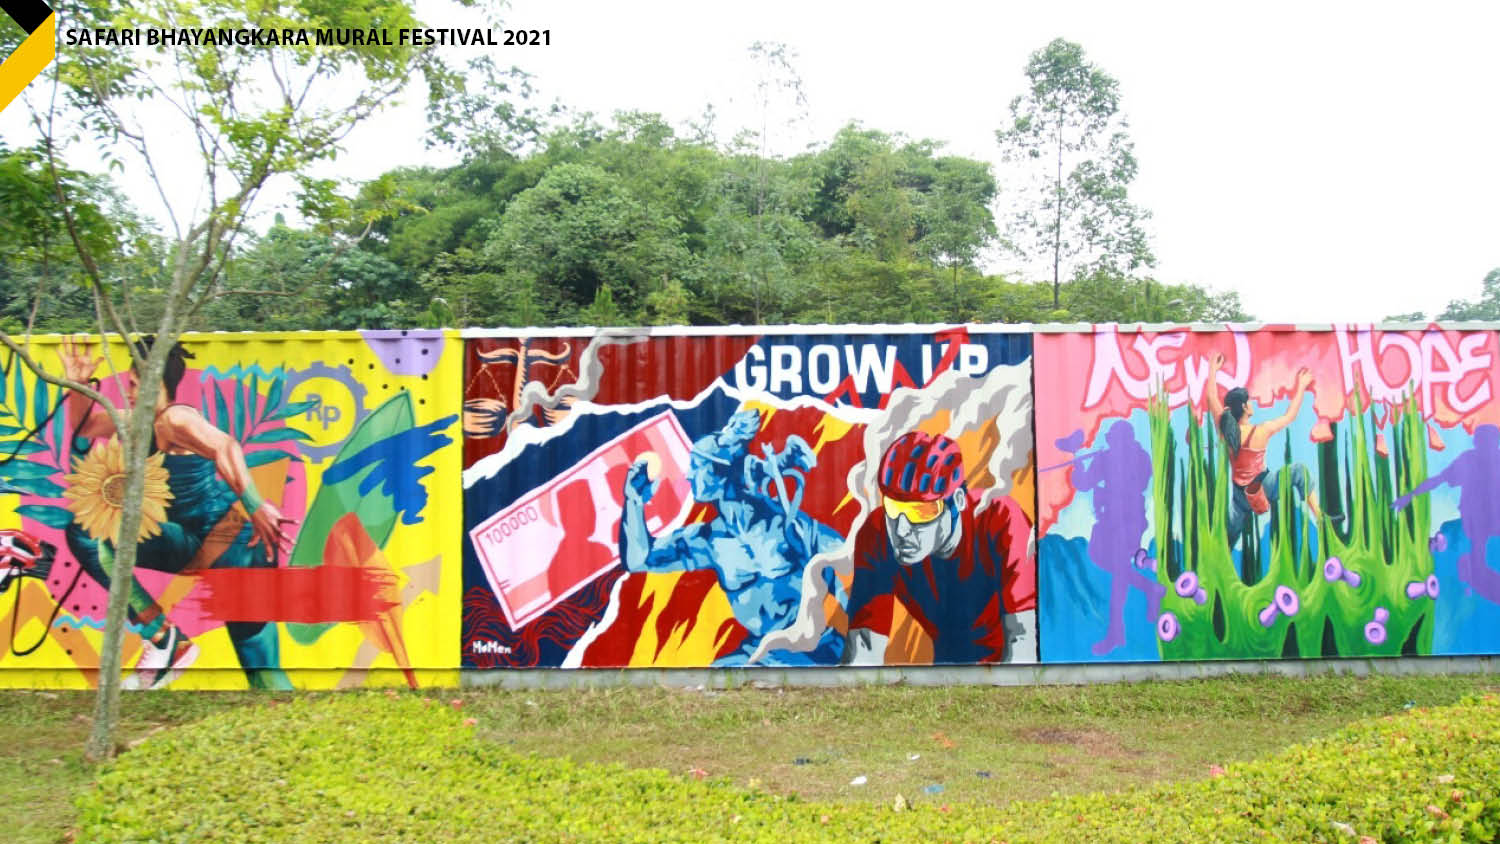 Hasil karya seniman mural pada Safari Bhayangkara Mural Festival 2021 di BSD Xtreme Park, Tangerang Selatan pada Kamis, 30 Desember 2021.